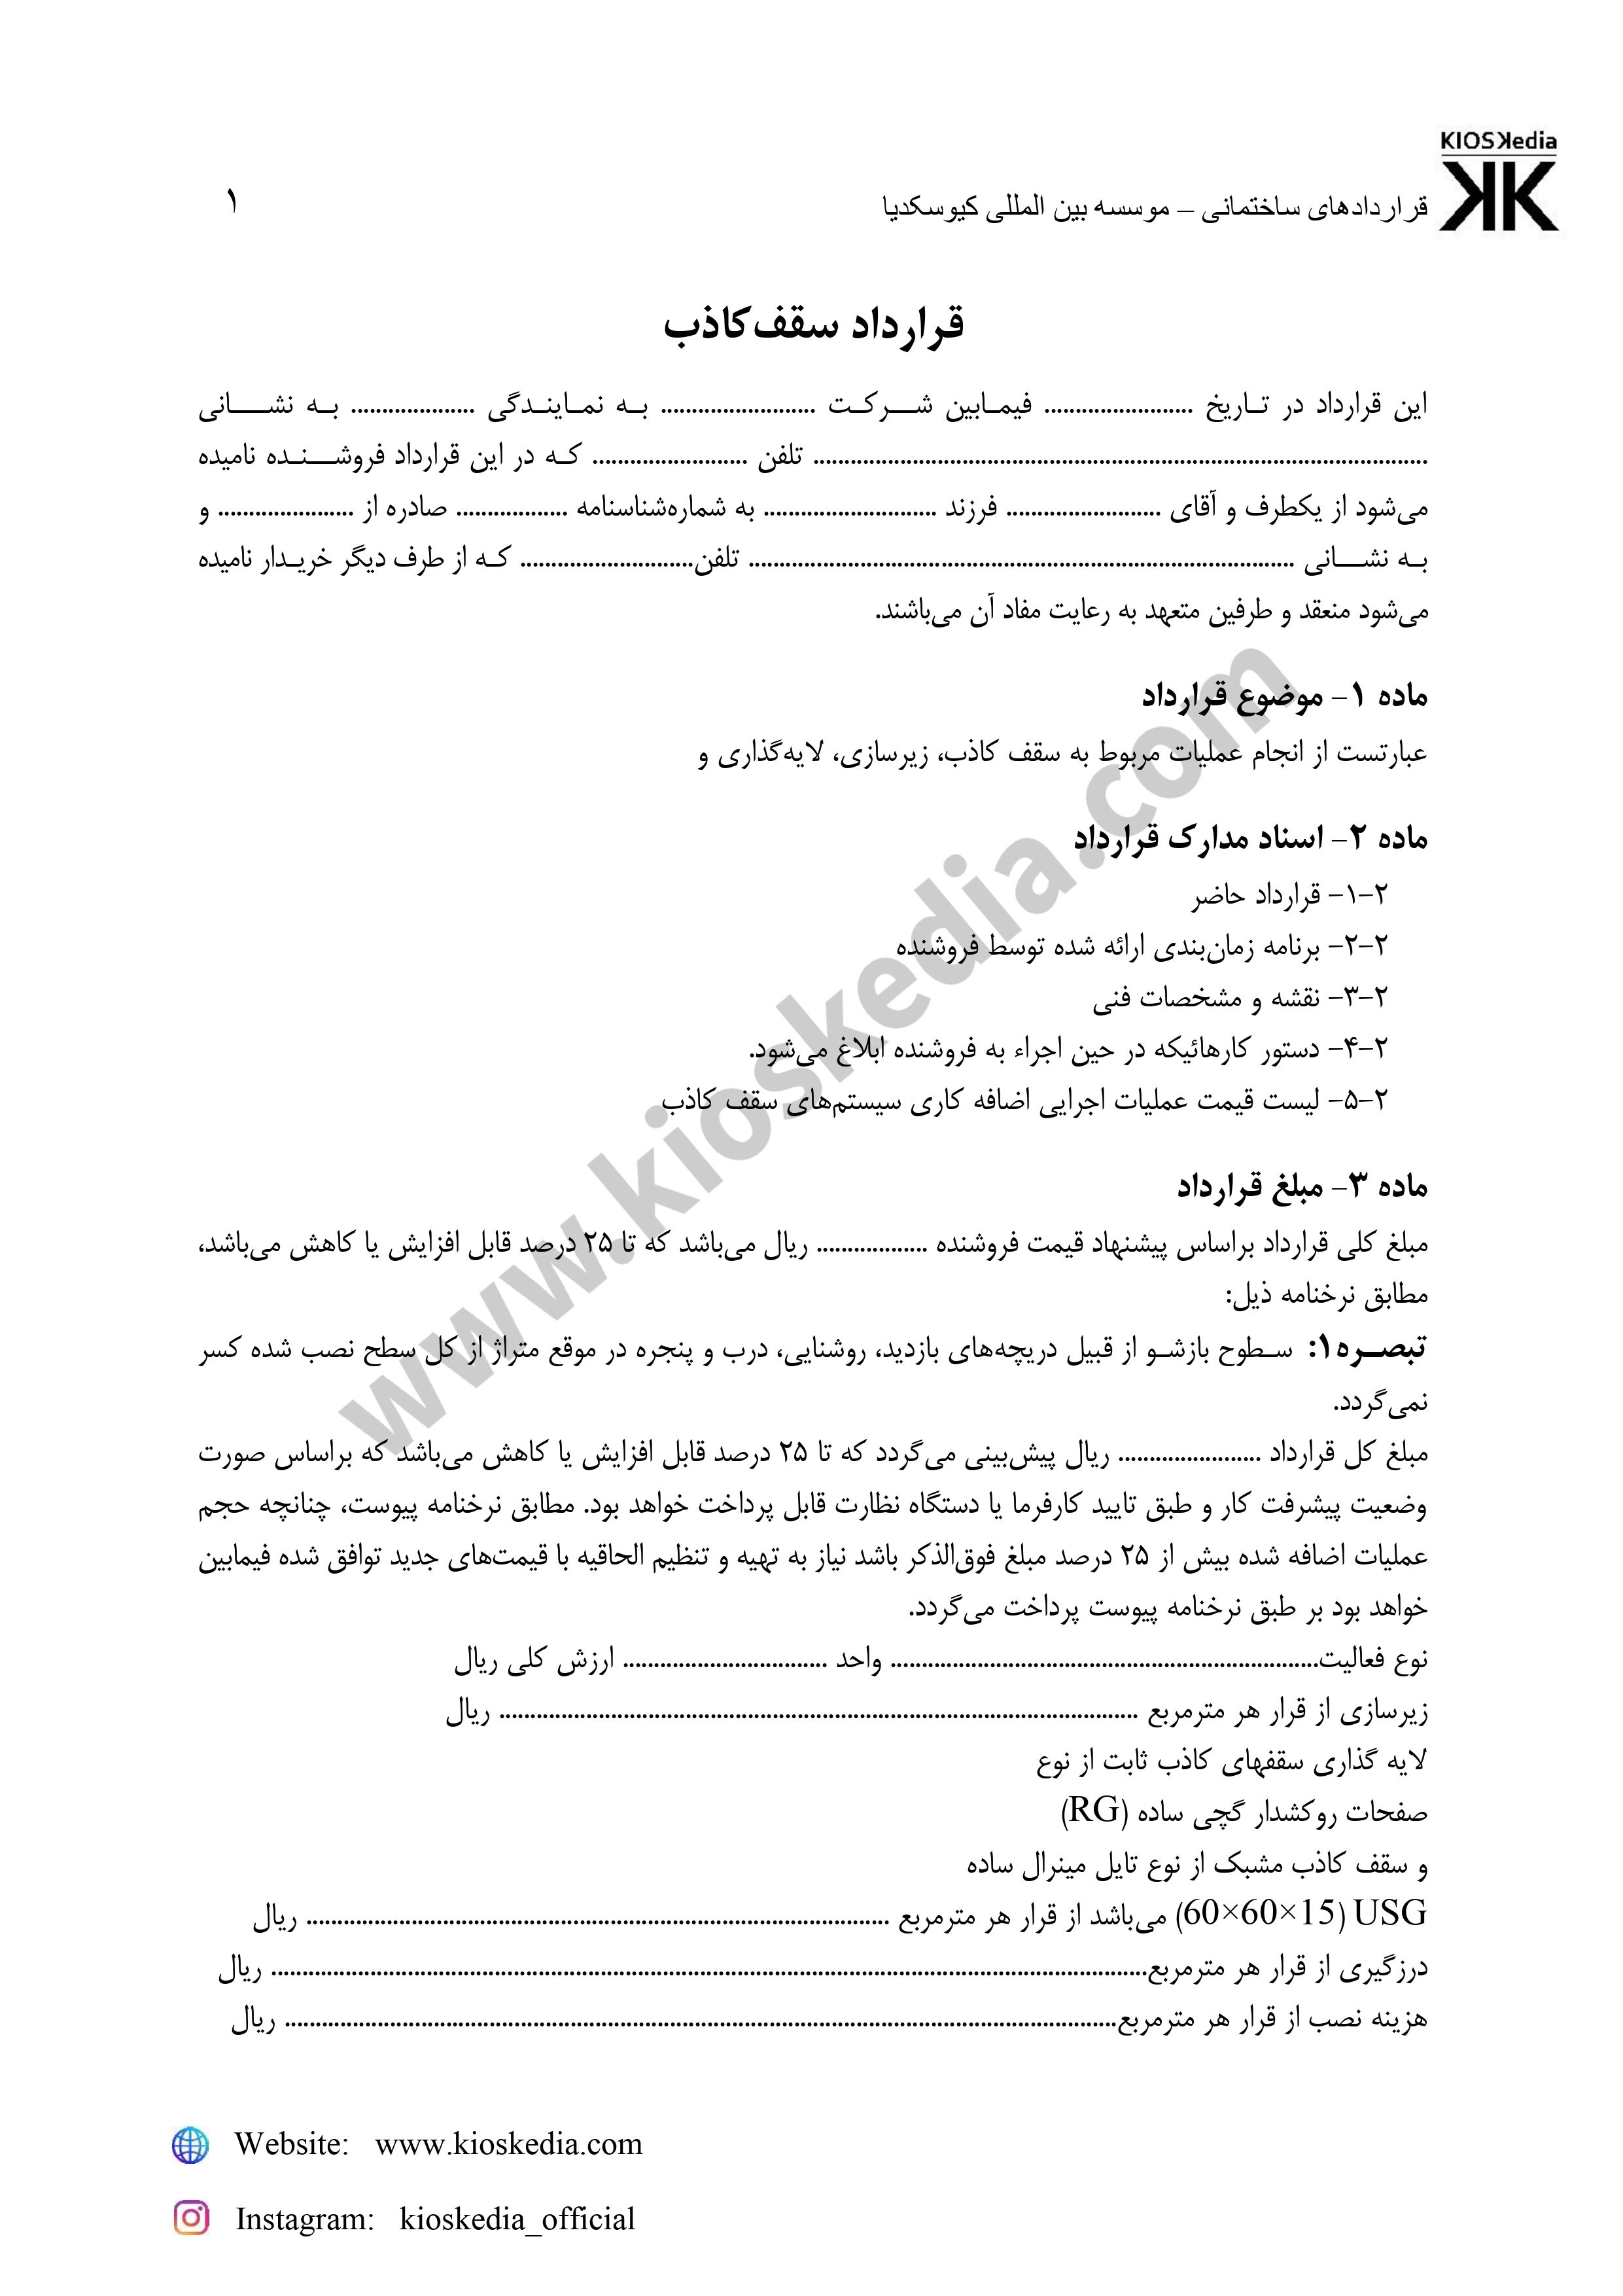 تصاویر صفحه اول نمونه قراردادها